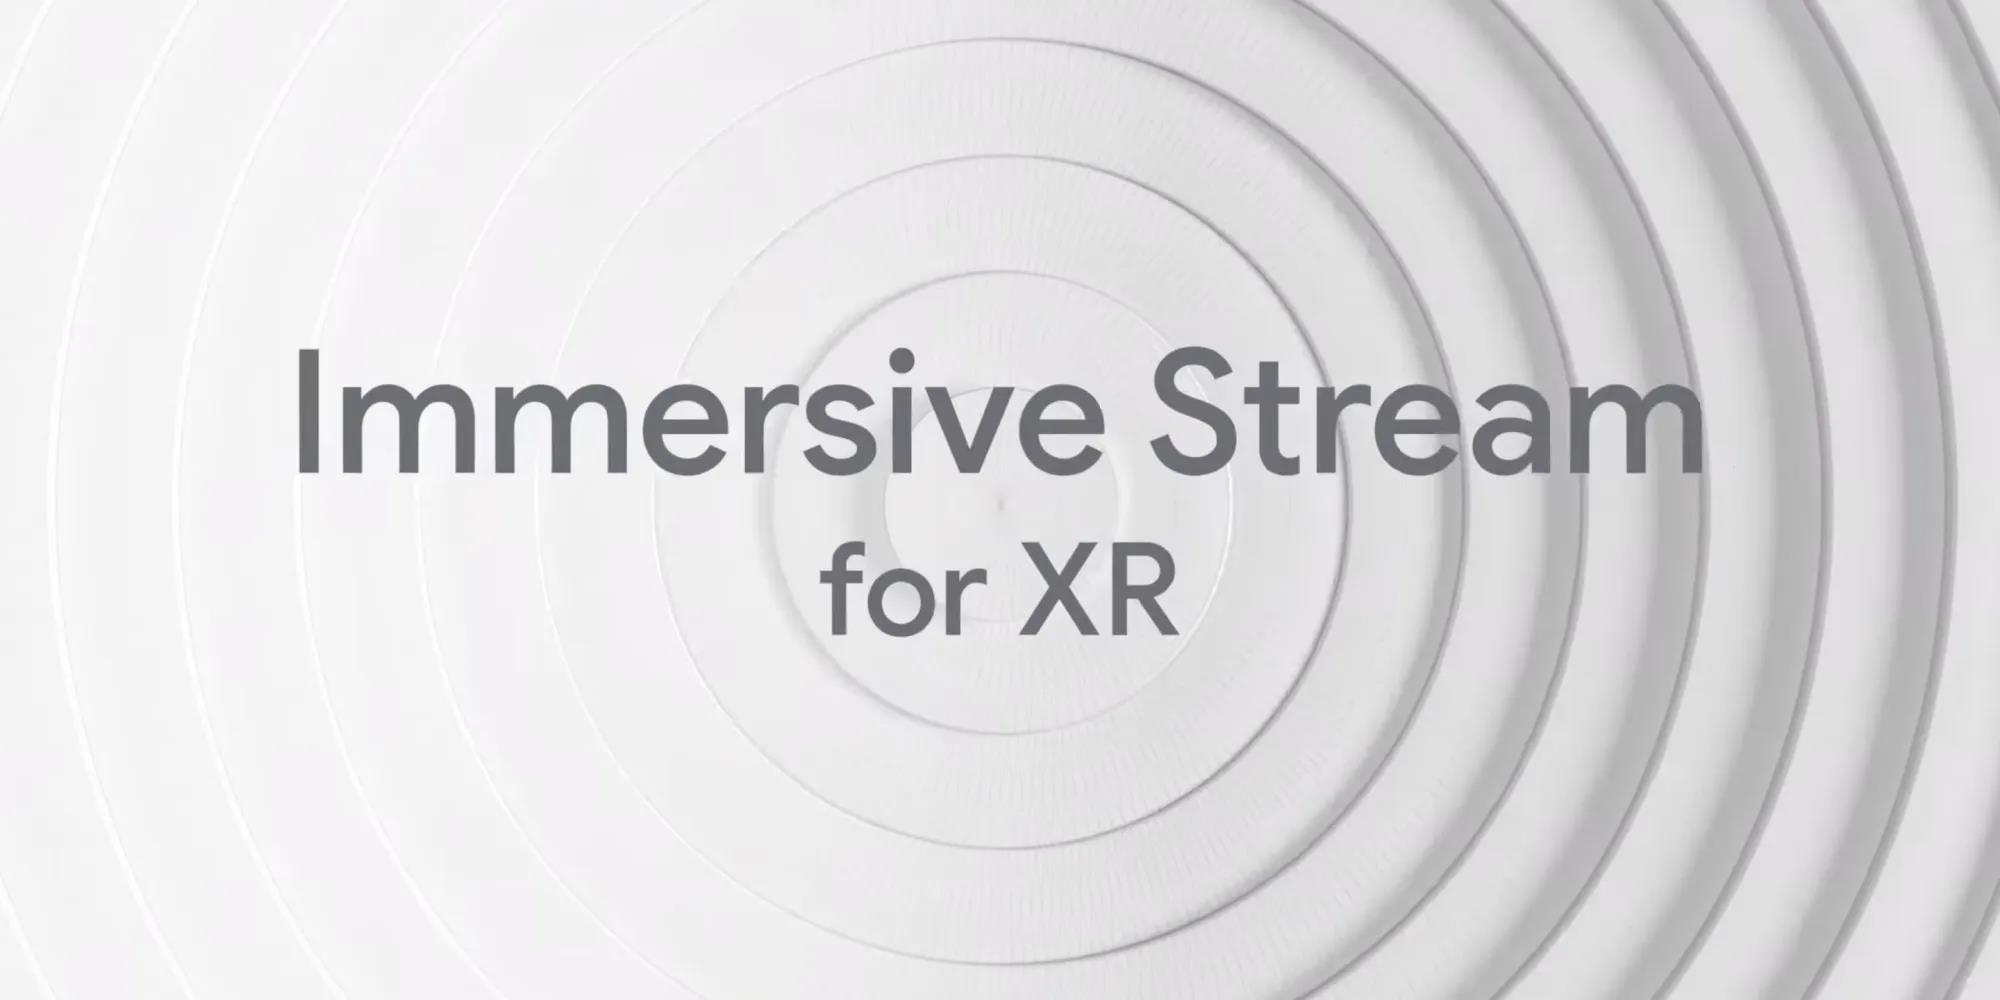 谷歌宣布其适用于XR的 Immersive Stream将支持AR/VR头显